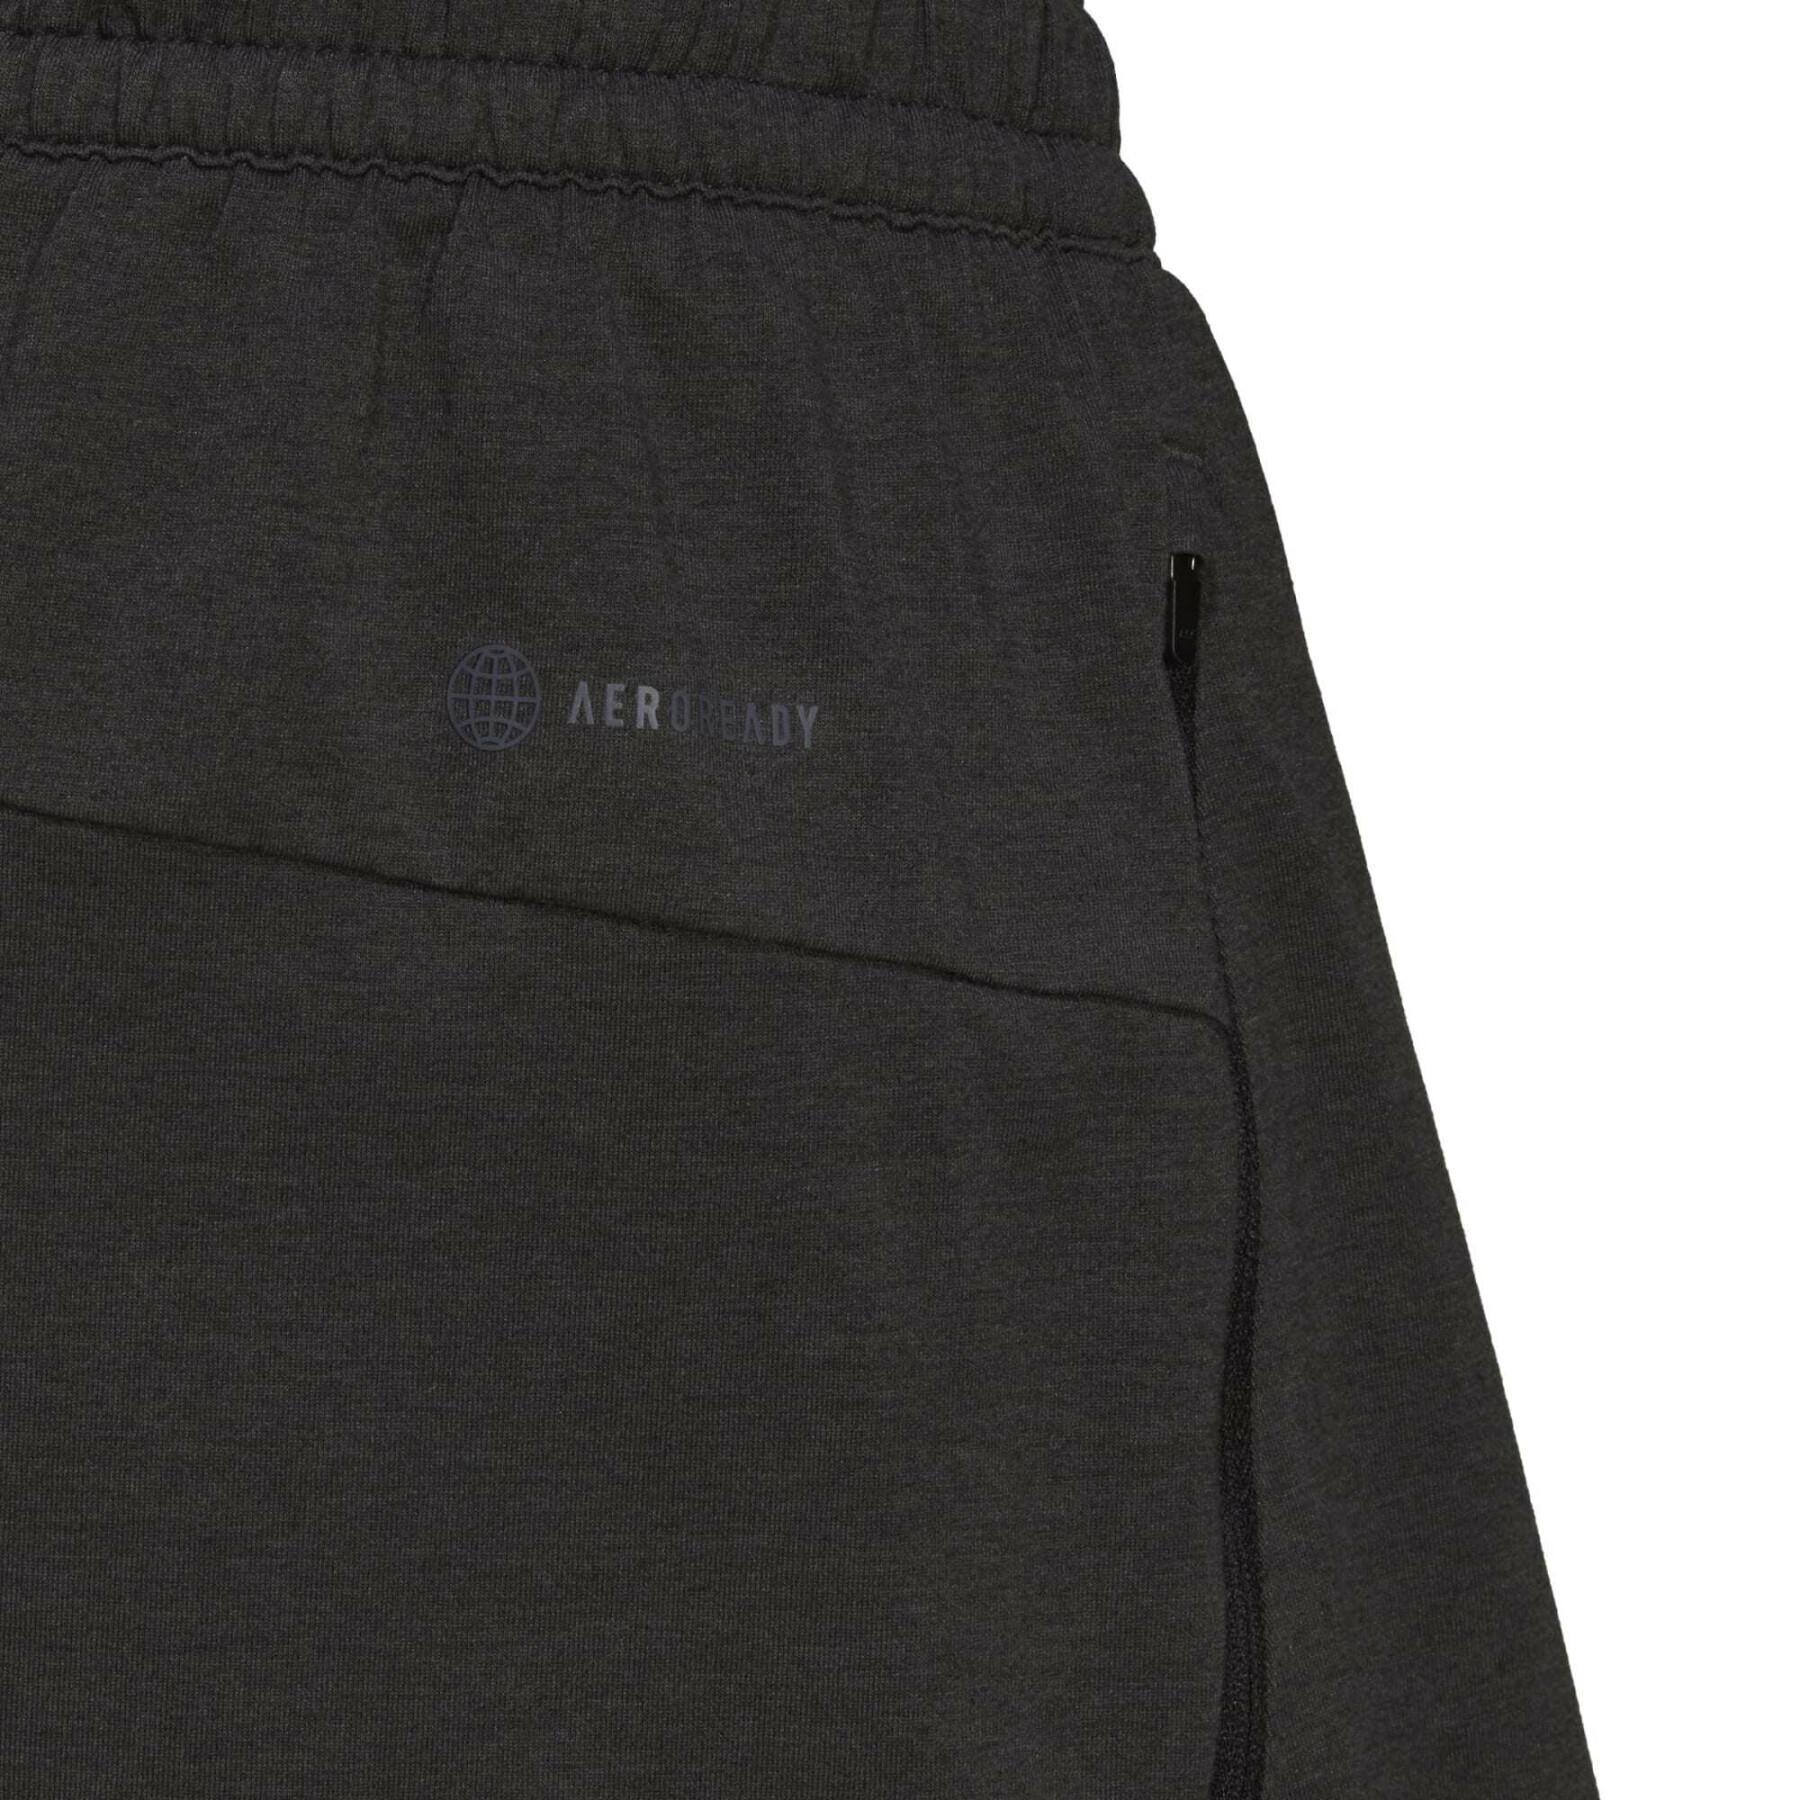 Pantalones cortos de entrenamiento de 3 barras adidas Train Icons